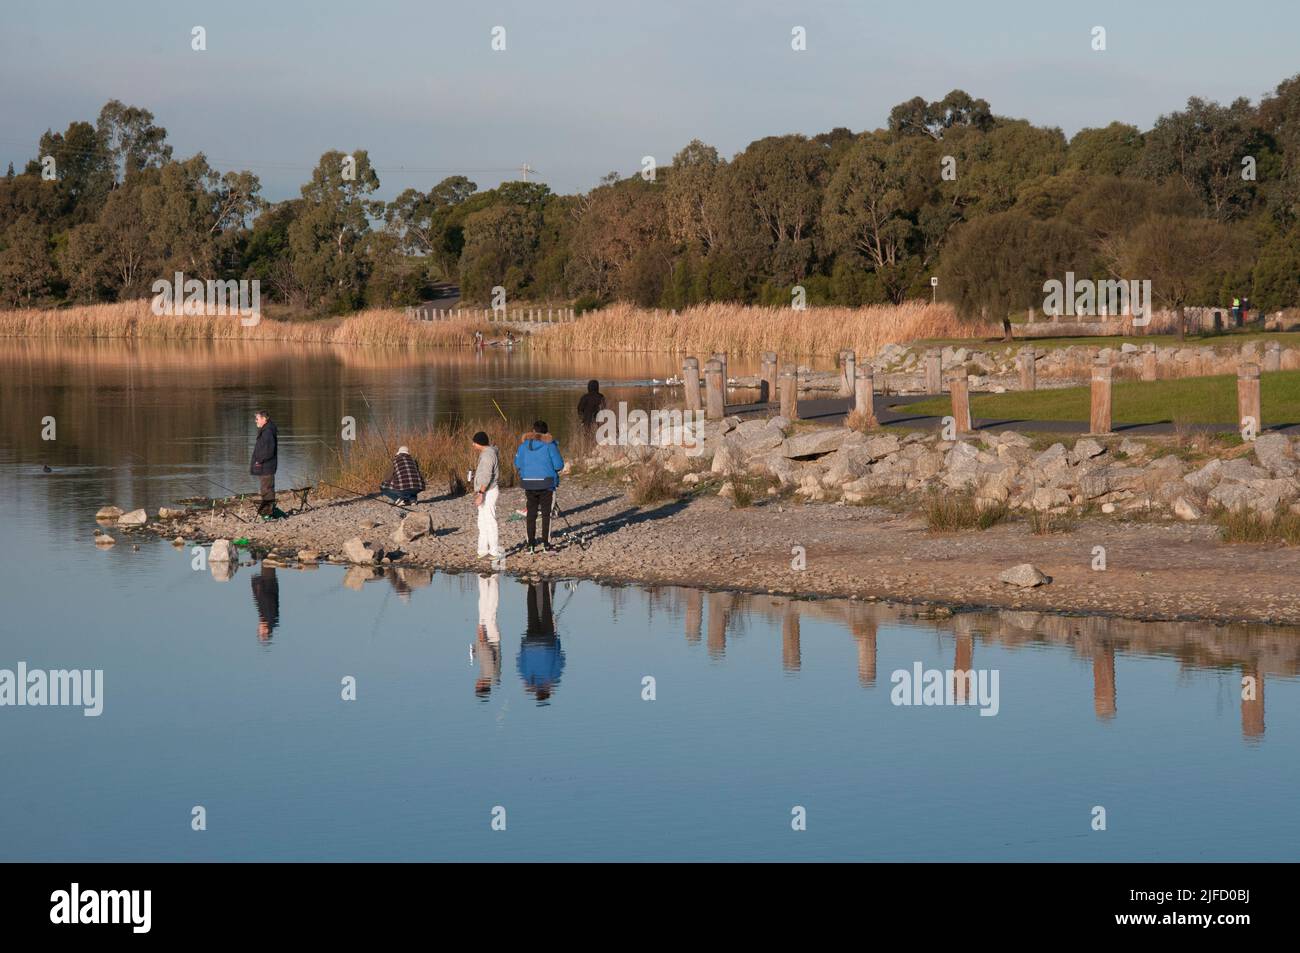 Der Karkarook Park ist ein 15 ha großer metropolitan Park in Moorabbin, Melbourne, Victoria, Australien, der ein von Menschenhand geschapptes Feuchtgebiet und einen See mit Fischen umfasst Stockfoto